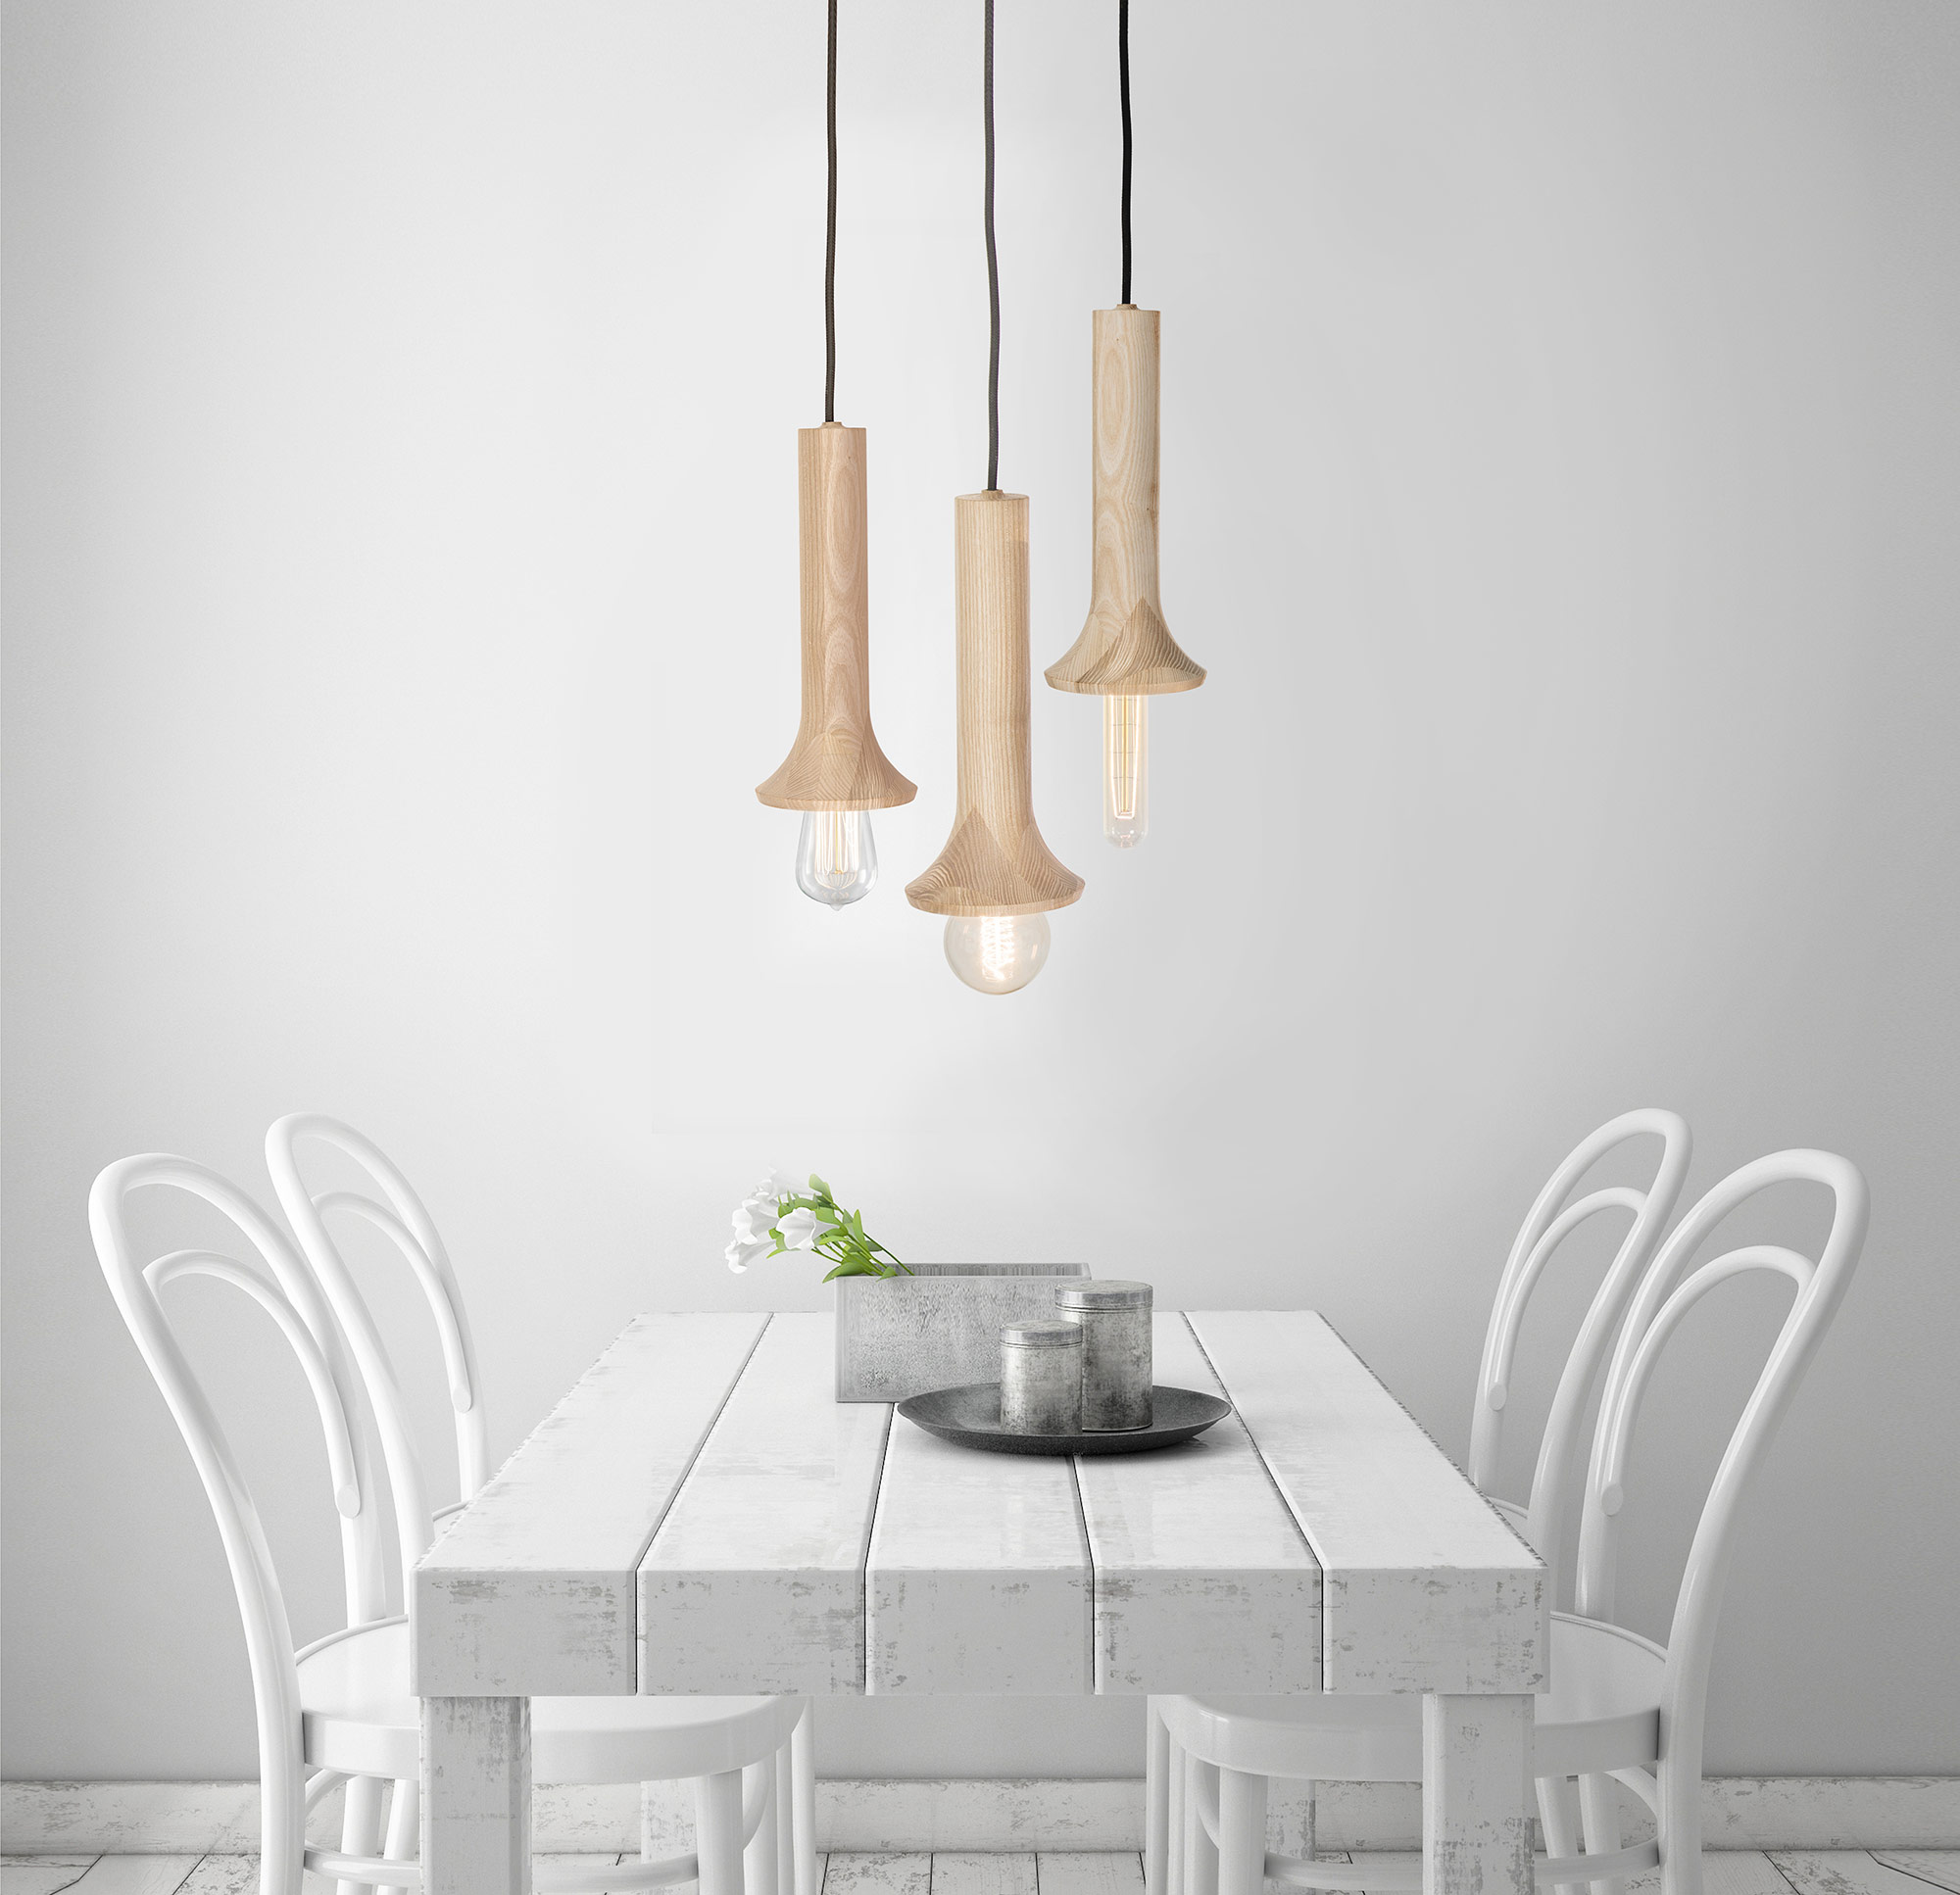 Antek Lamps by Otoprojekt